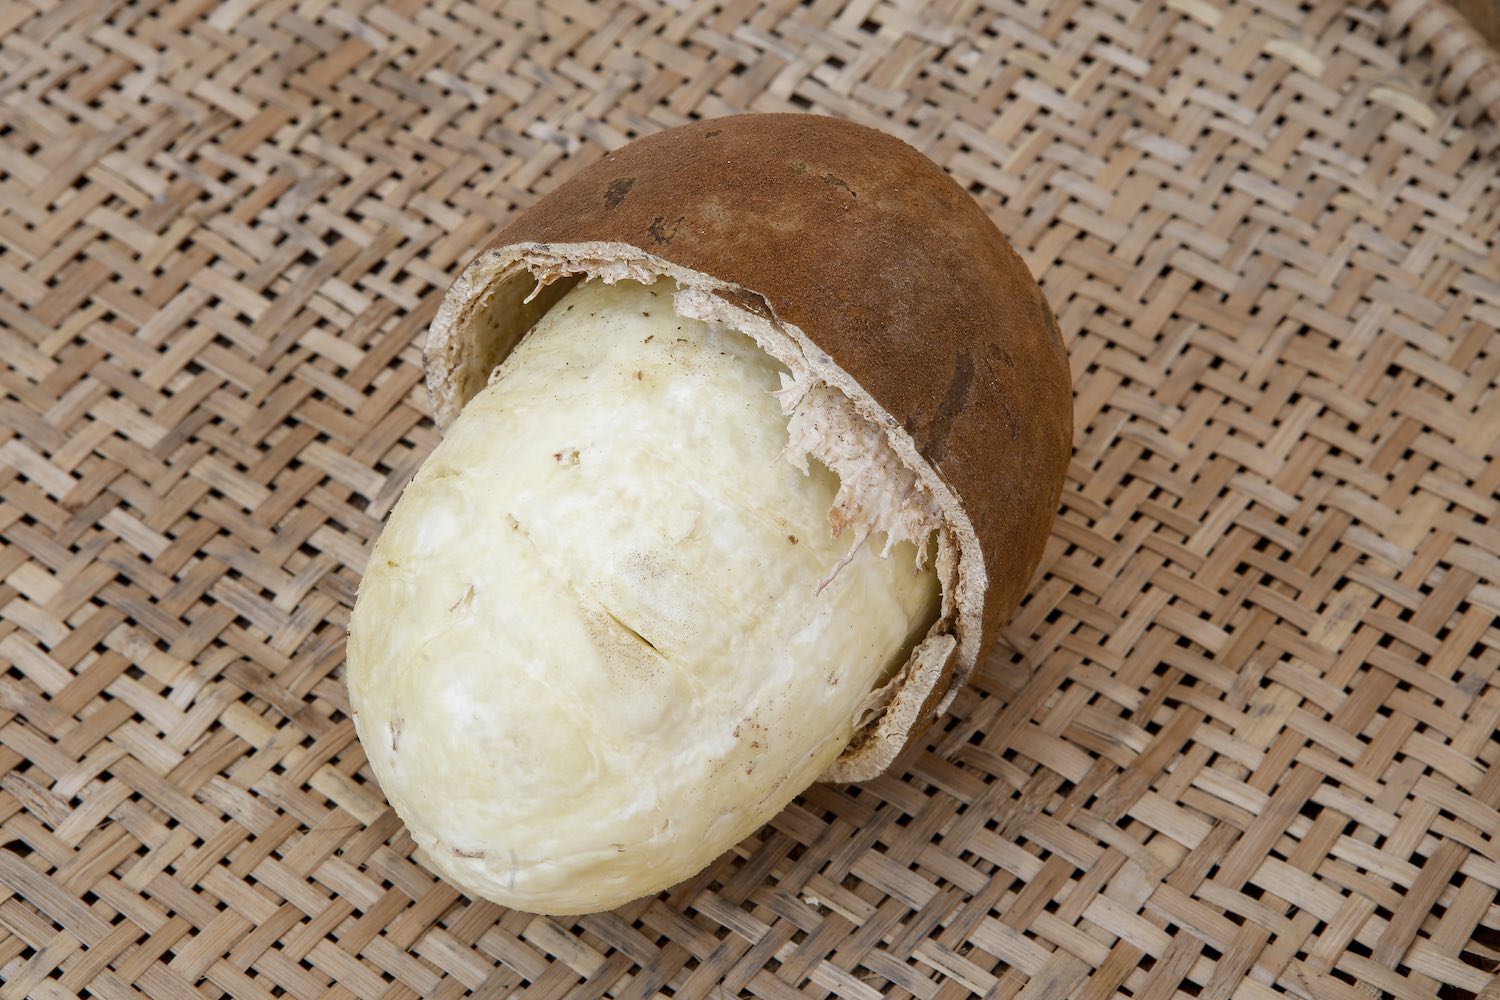 Cupuacu fruit